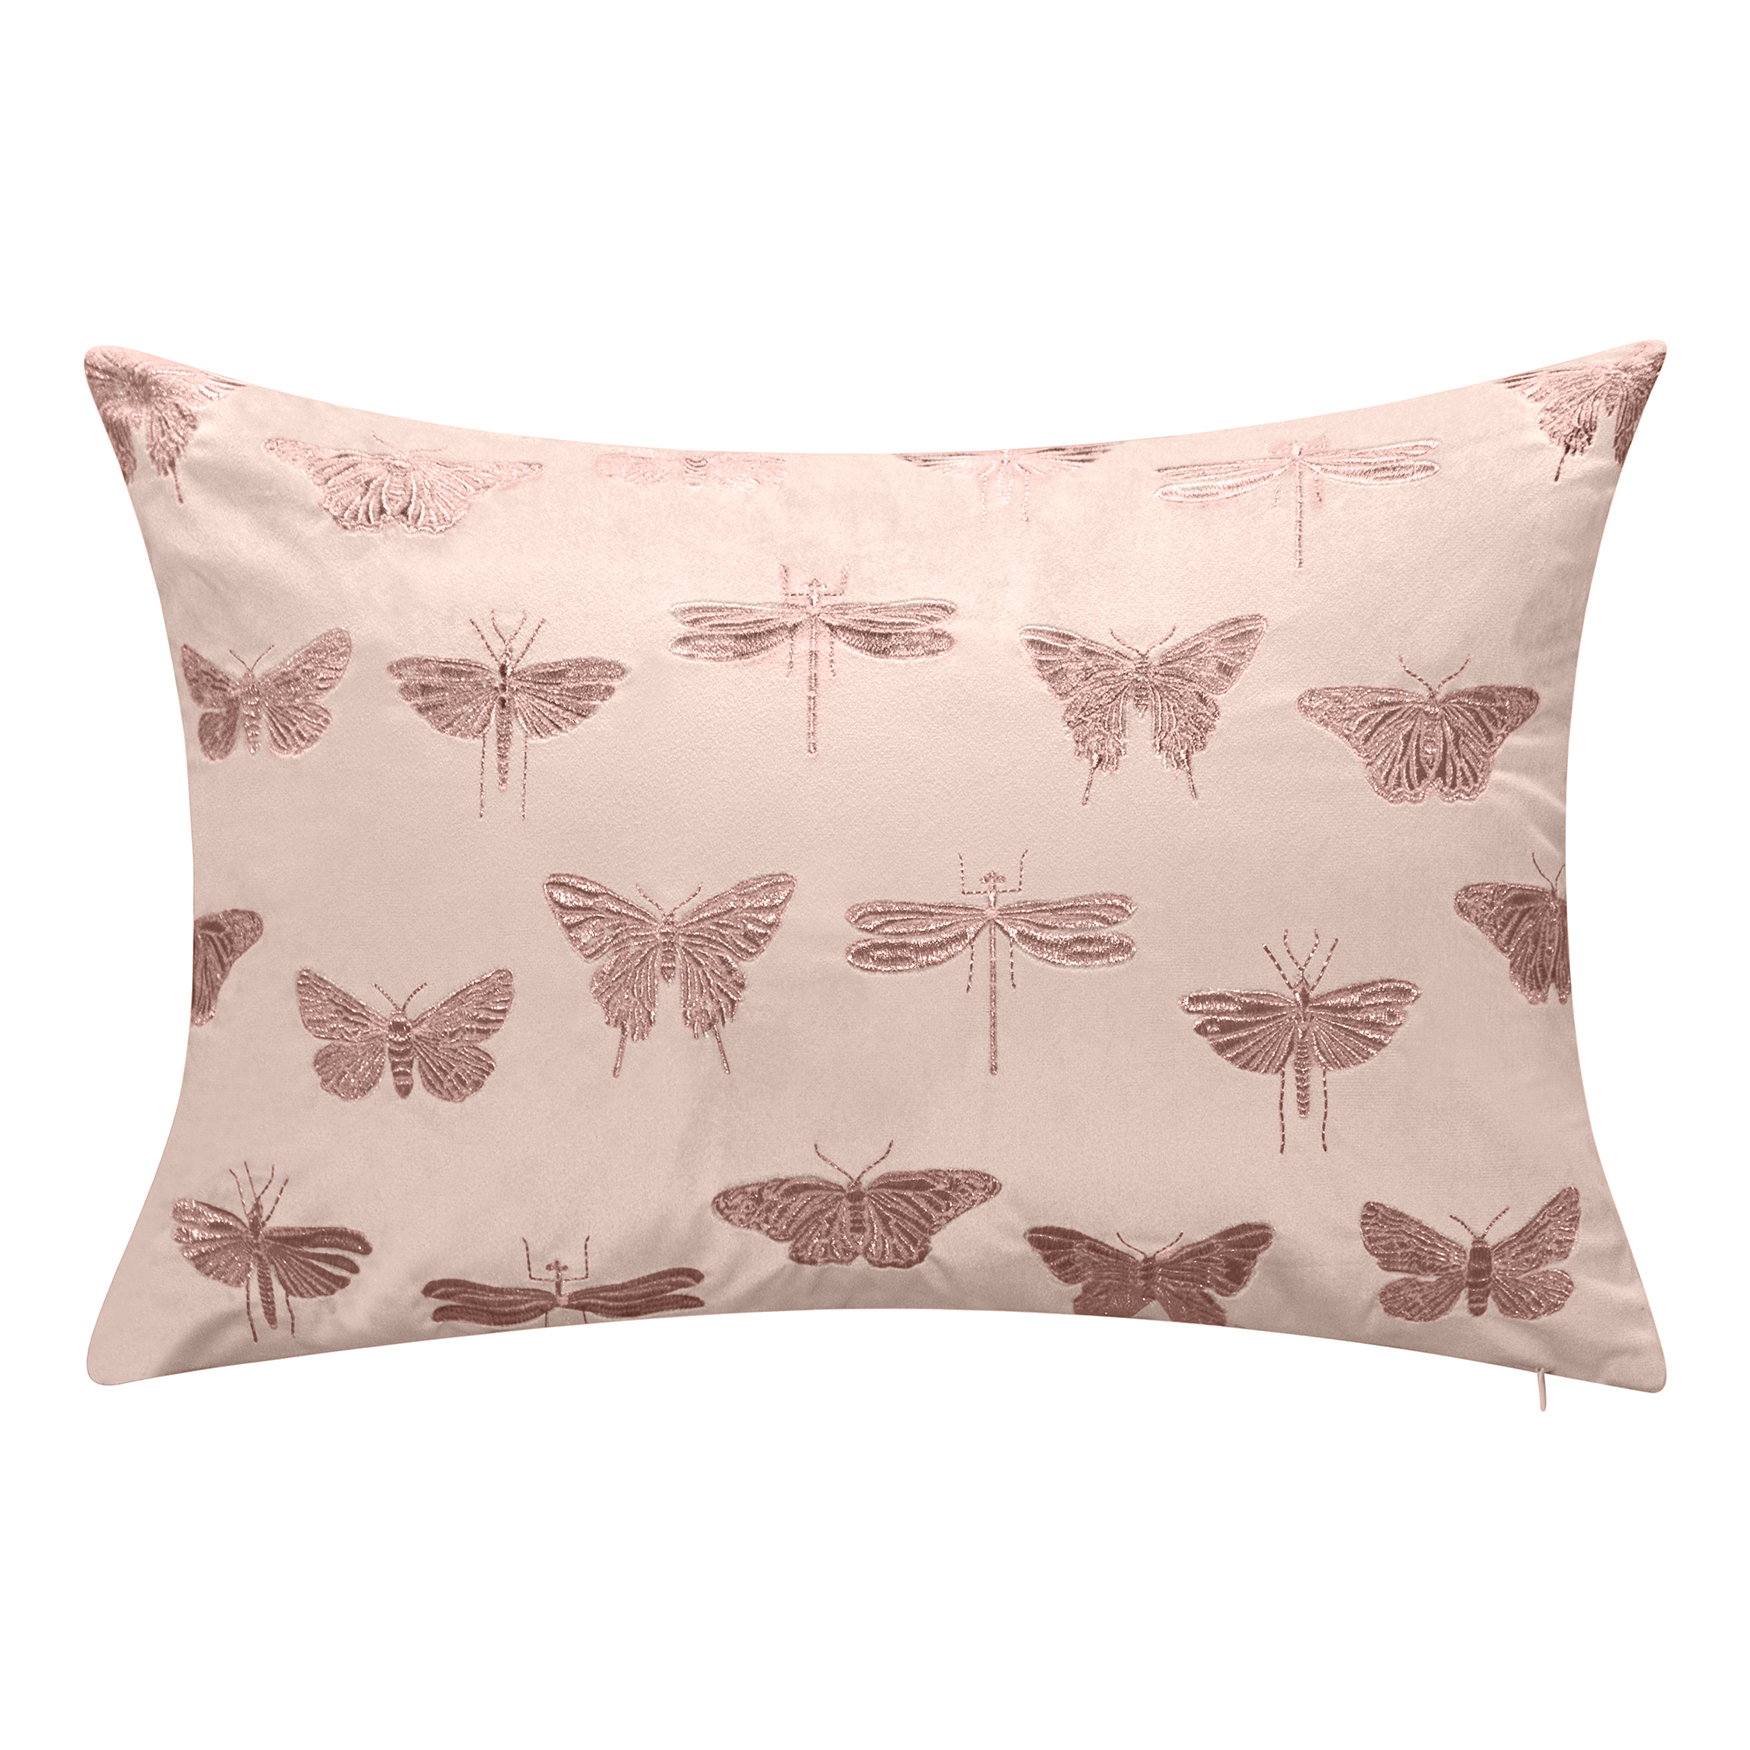 Embroidered Butterflies and Moths Lumbar Decorative Pillow, 